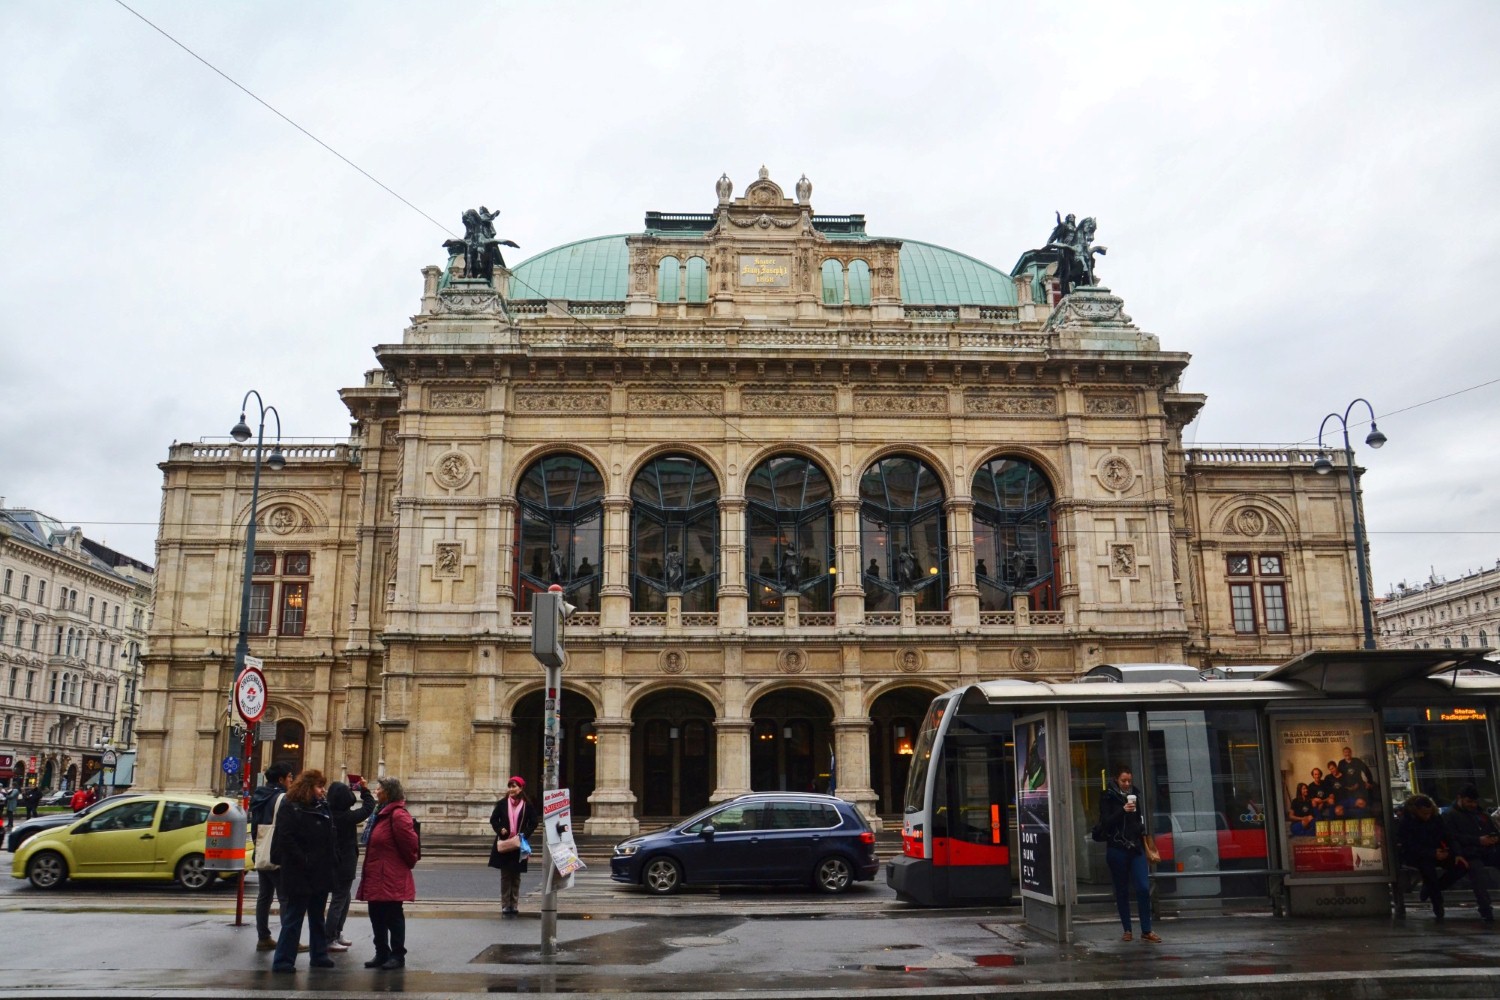 Wiedeń, Austria - bele kaj, blog podróżniczy po śląsku